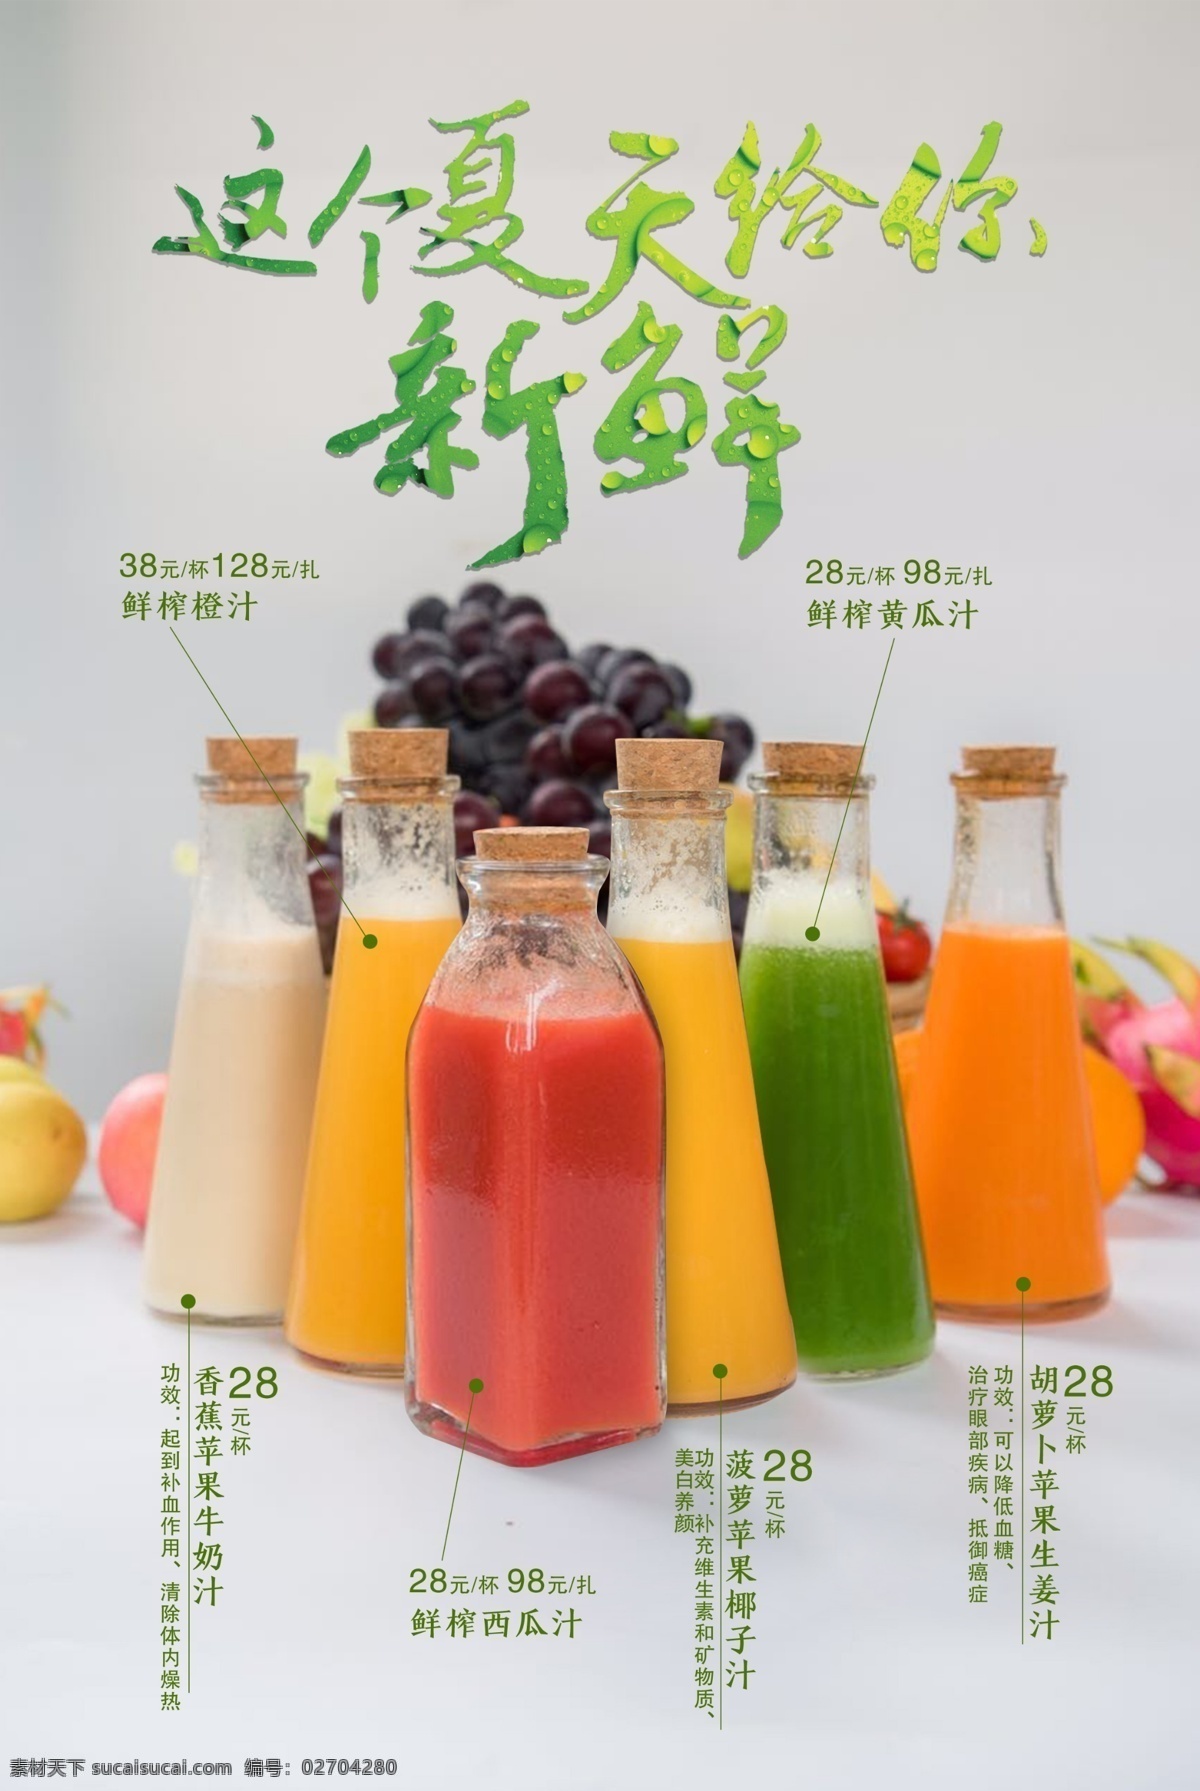 夏季饮料海报 夏季冷饮 饮料 果汁 清新海报 展板设计 橙汁 西瓜汁 樱桃汁 番茄汁 牛奶 我的作业